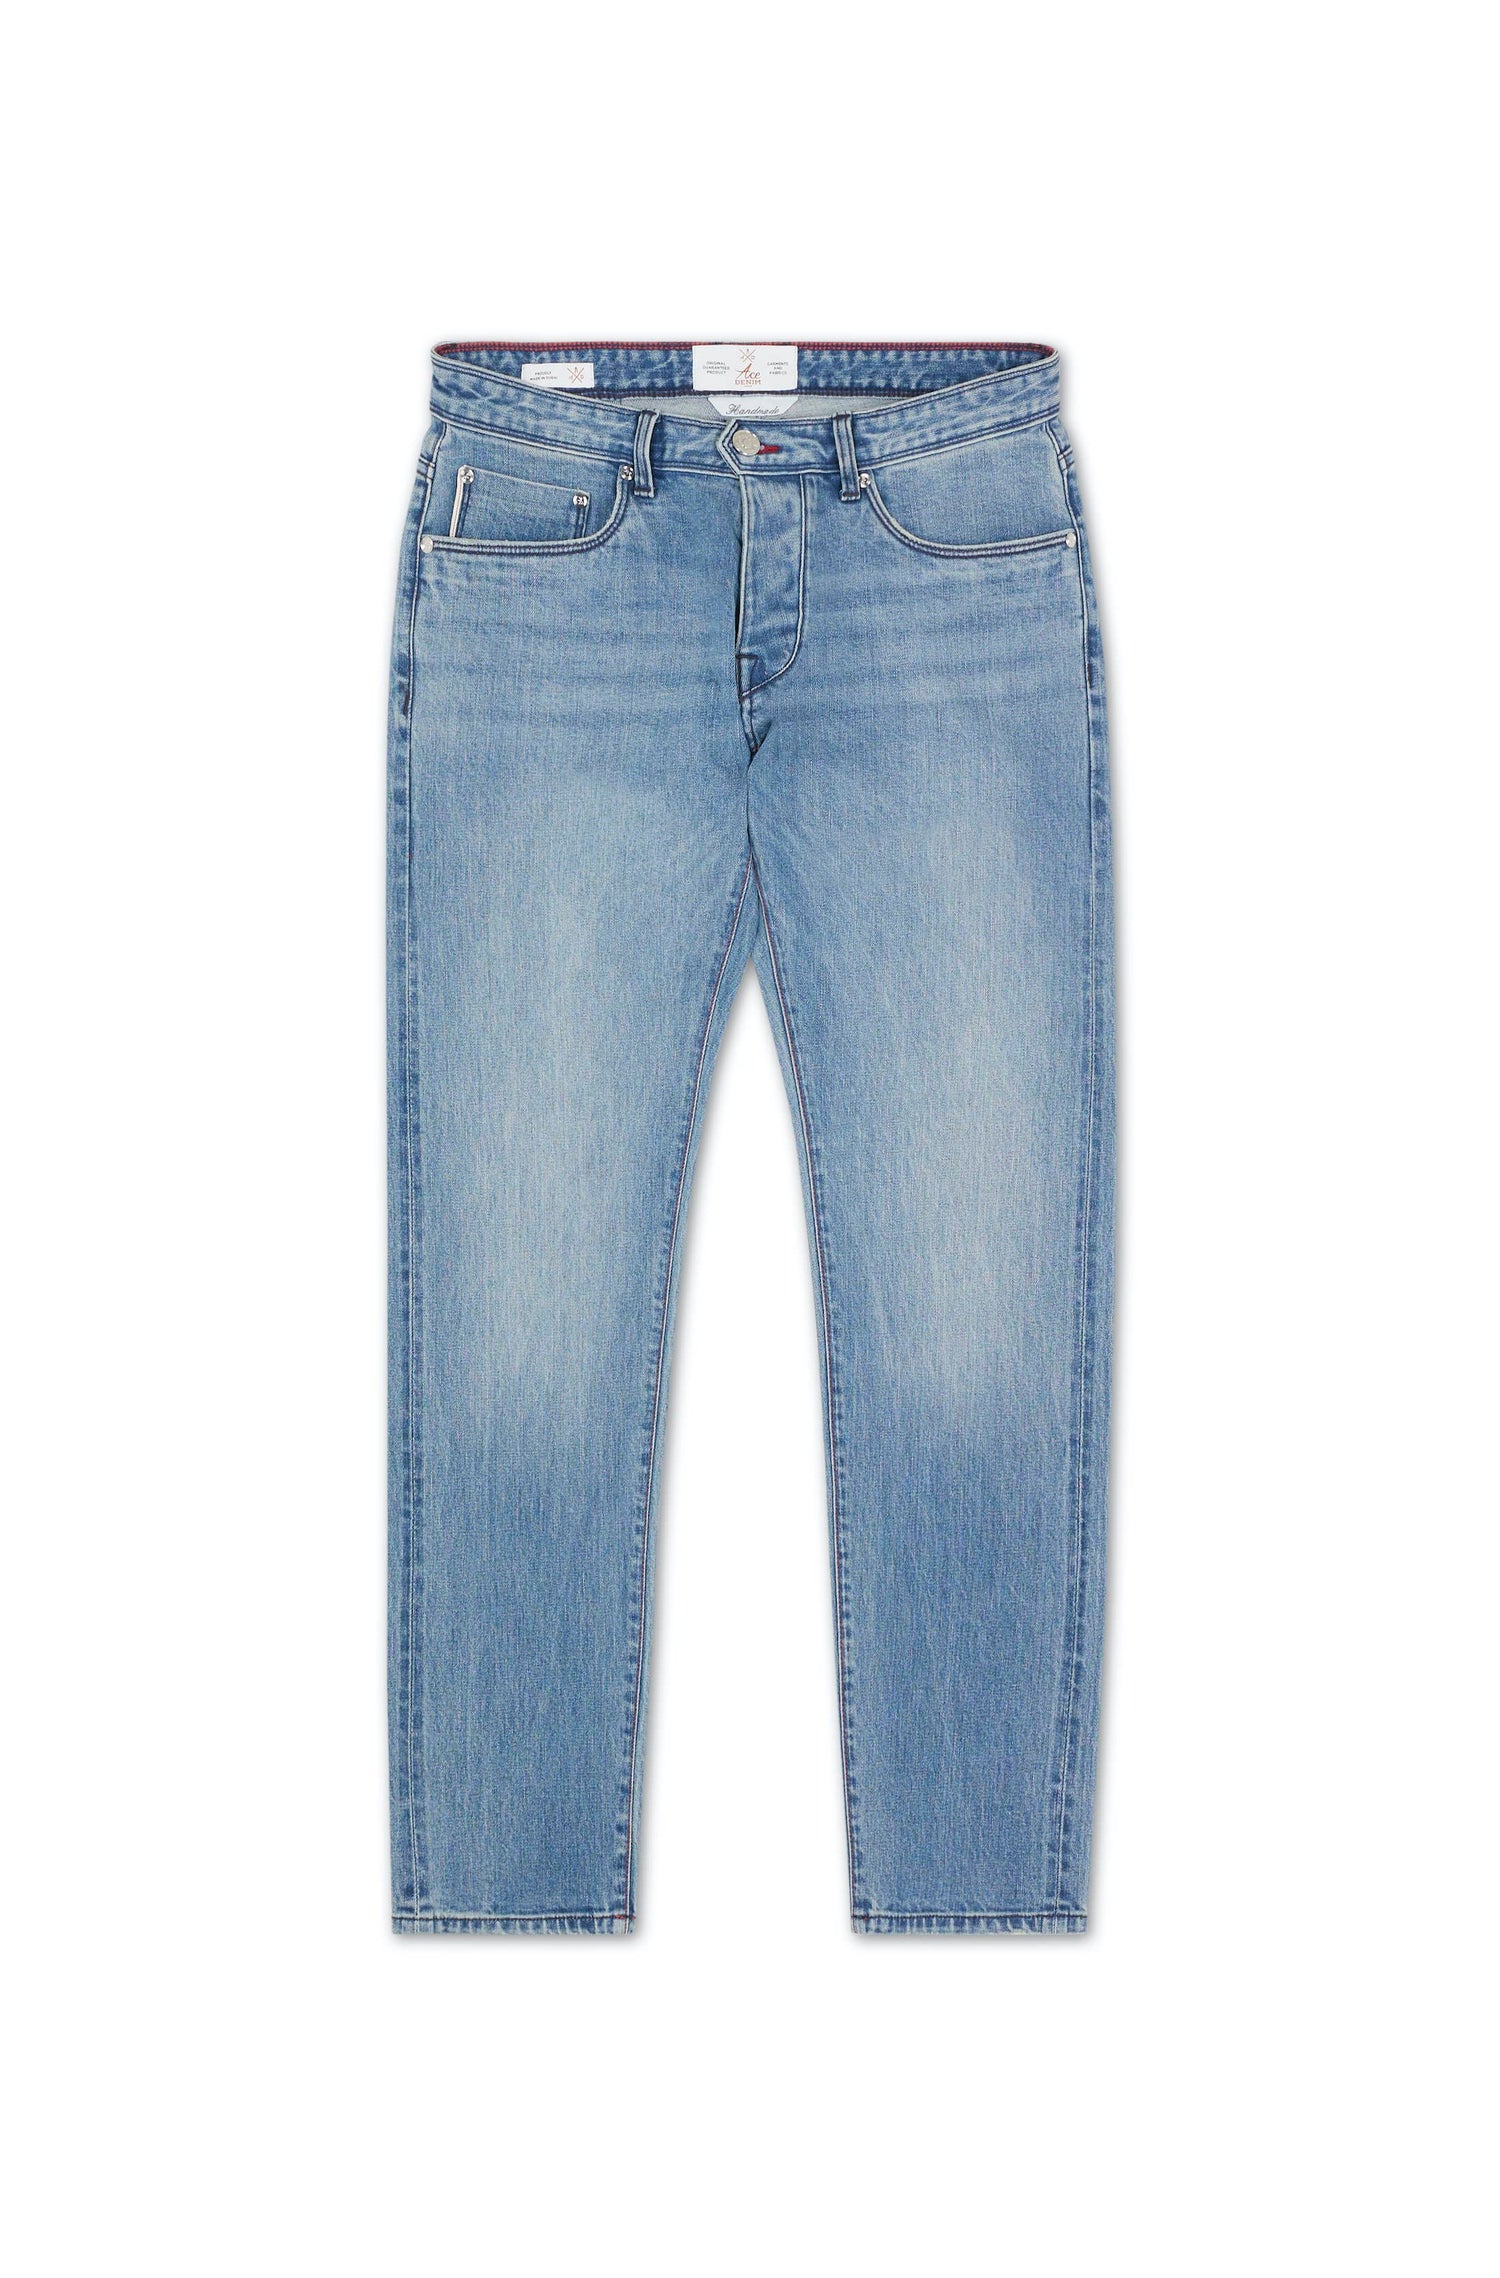 jeans homme bleu clair coupe slim toile épaisse